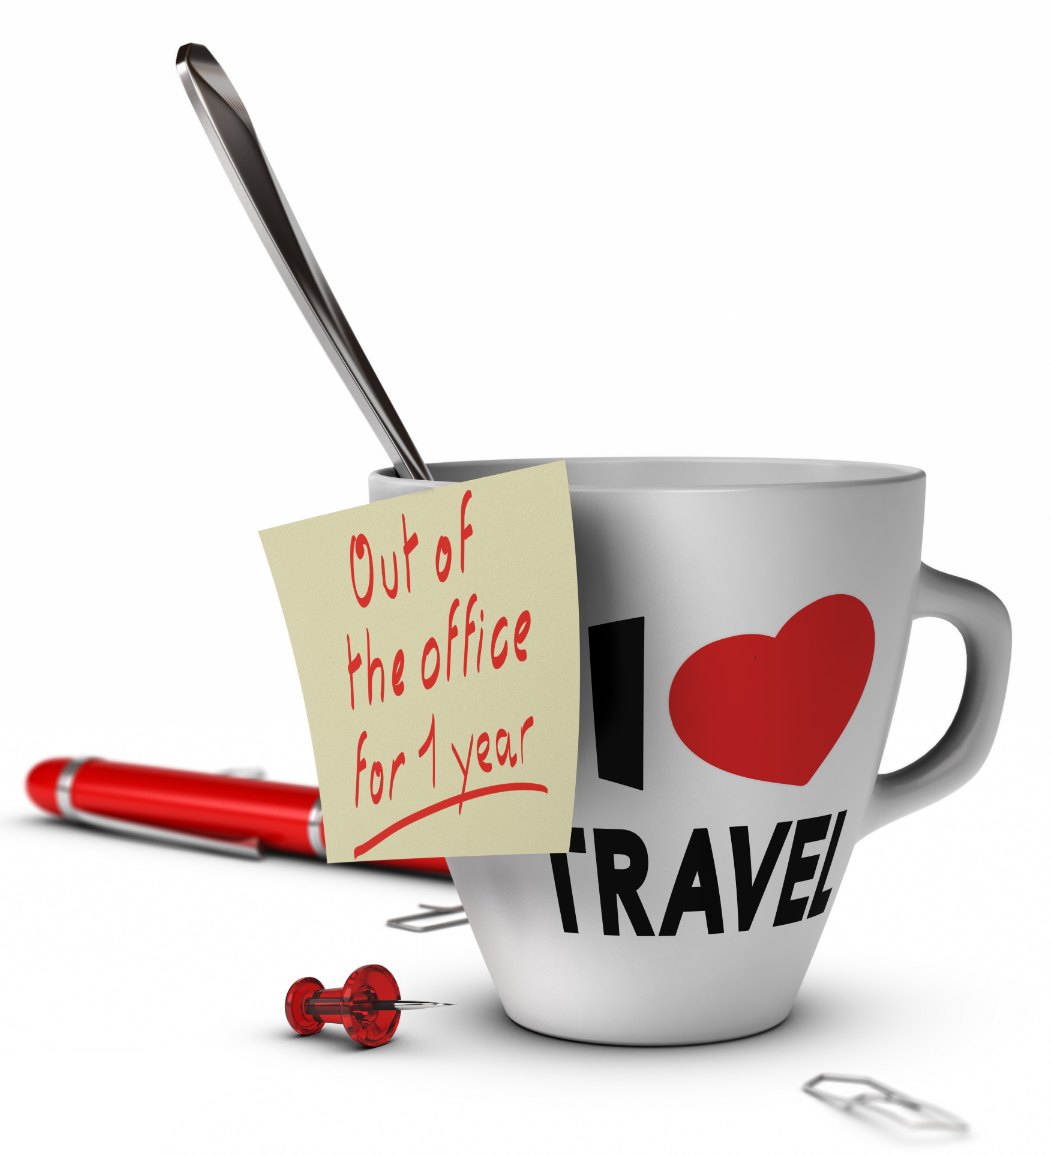 Kaffeetasse mit Löffel auf der steht: "I love travel". Post it auf Tasse geklebt mit Bemerkung: "Out of the office for 1 year". Neben der Kaffeetasse liegen Büroklammern, roter Stift und rote Pinnnadel.